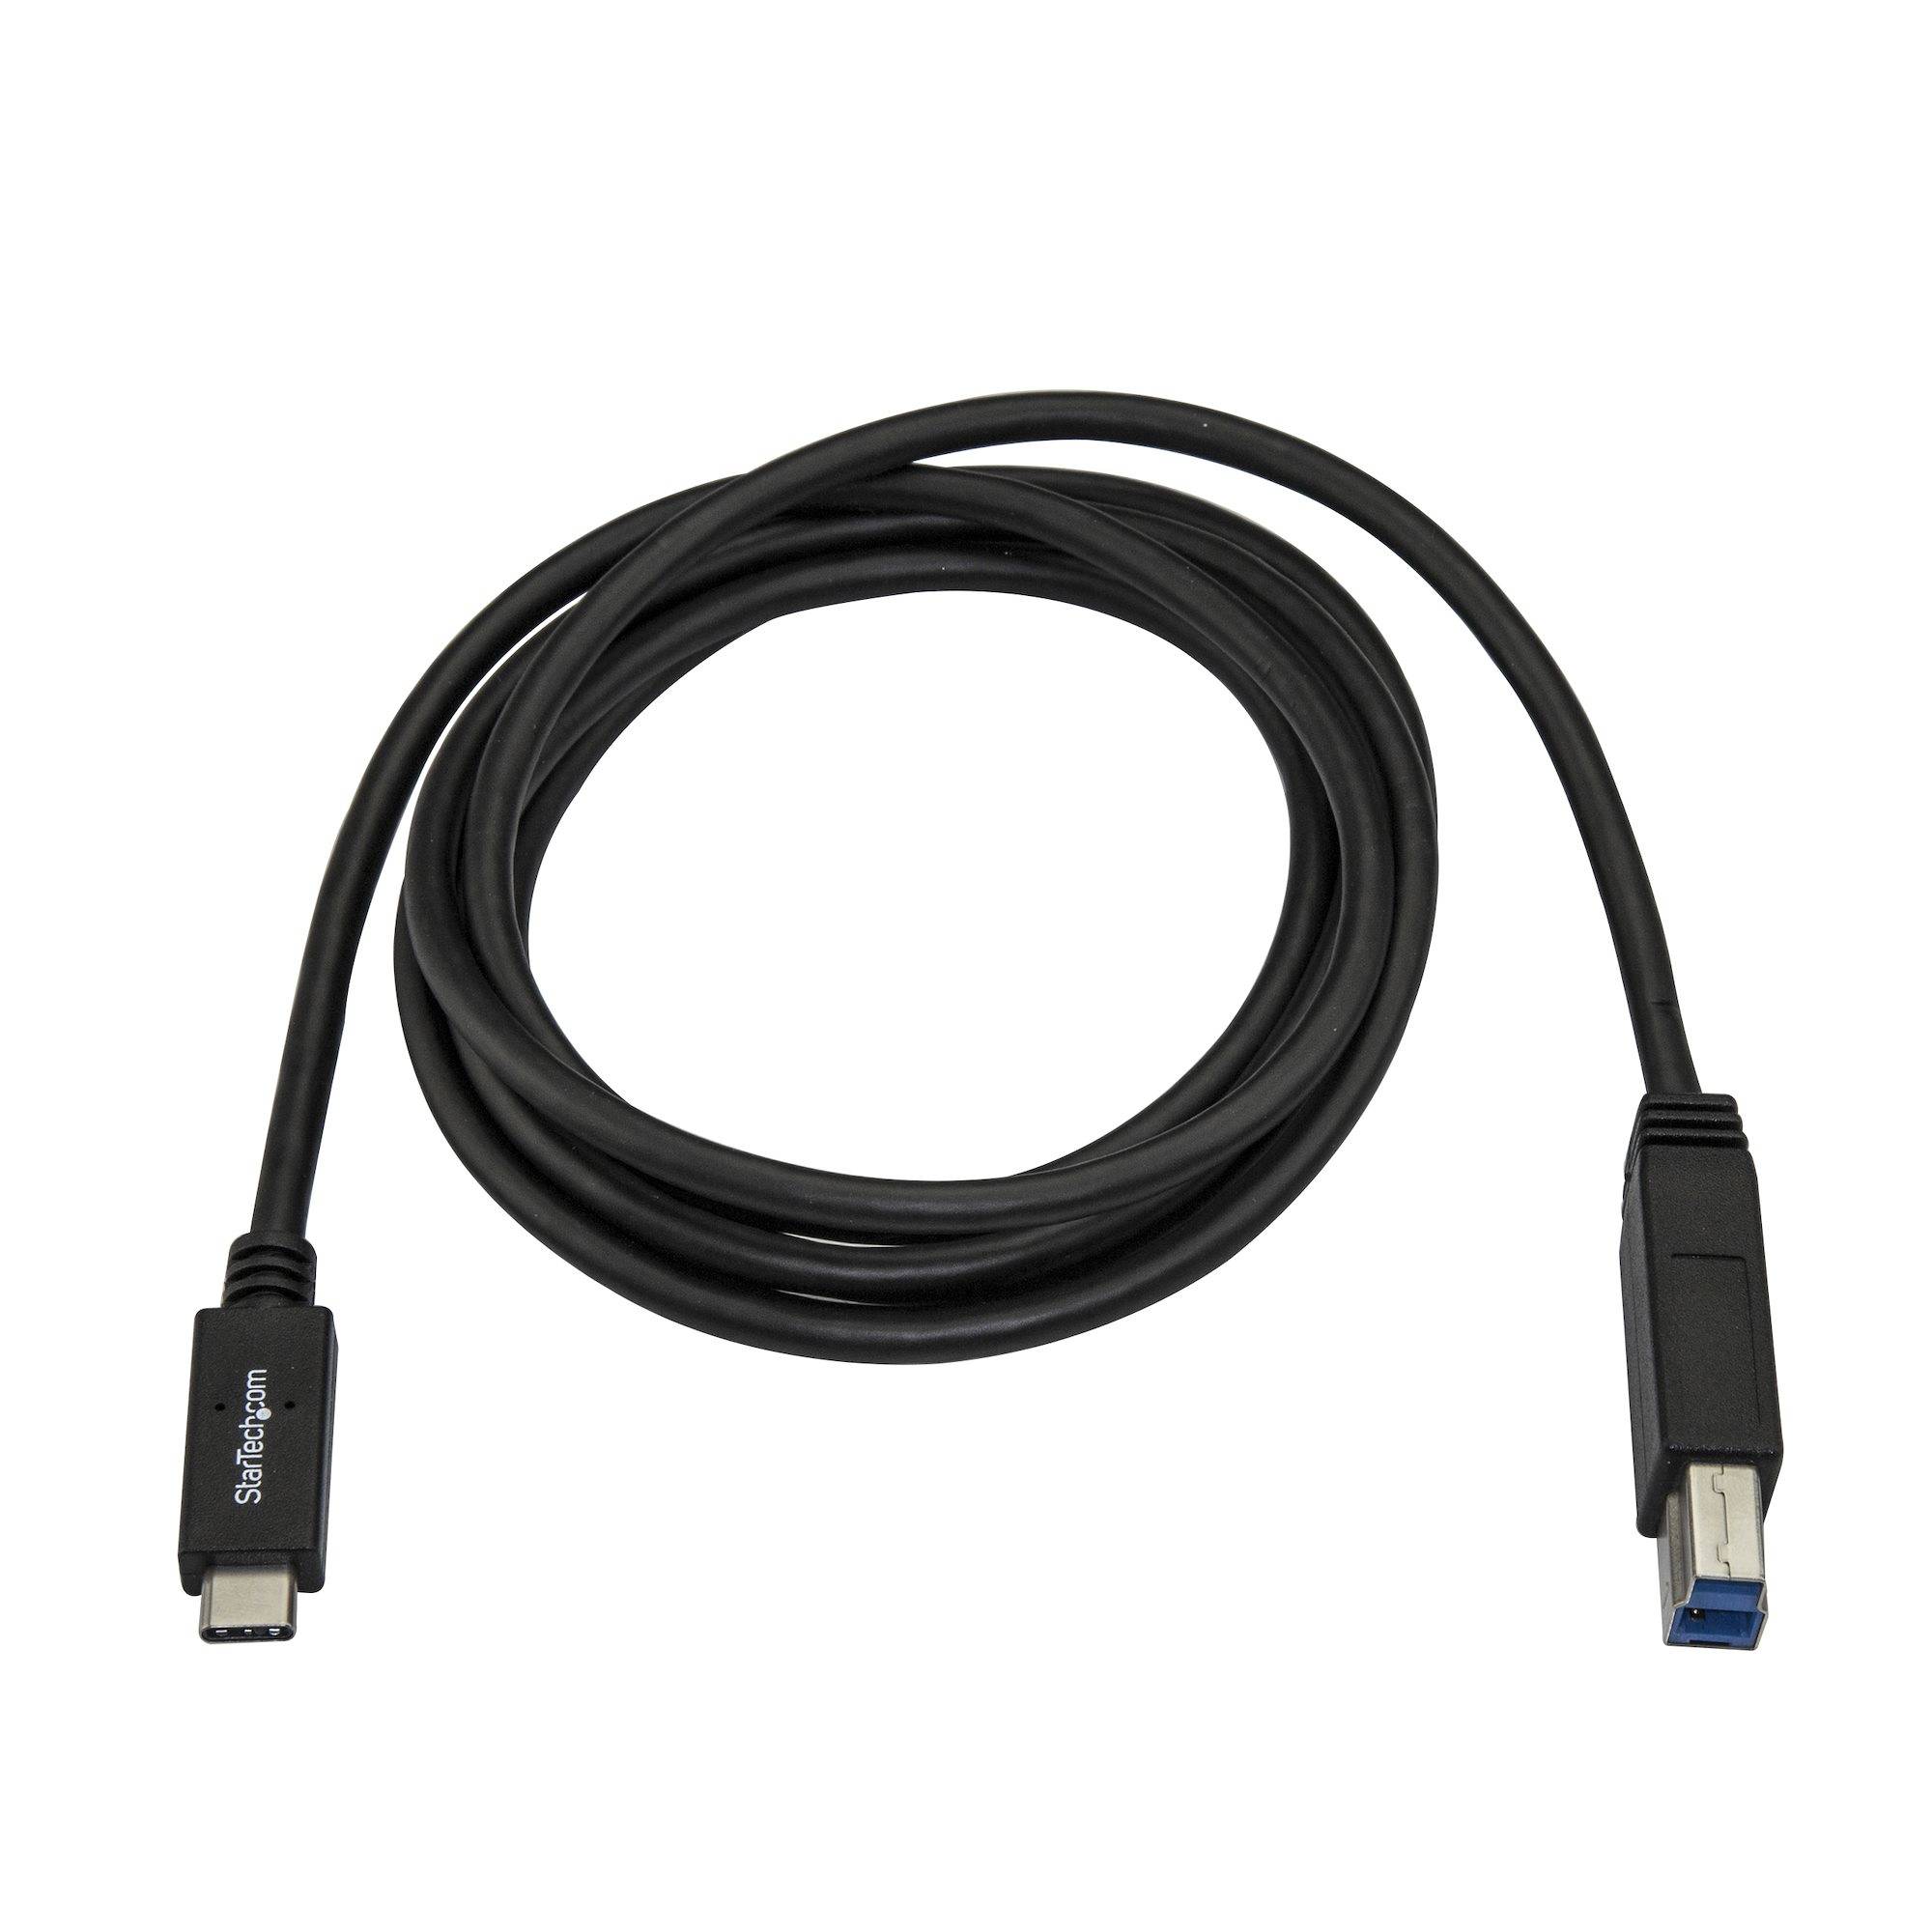 Rca Informatique - image du produit : 2M USB TYPE C TO USB TYPE B CABLE - USB 3.0 - 6FT